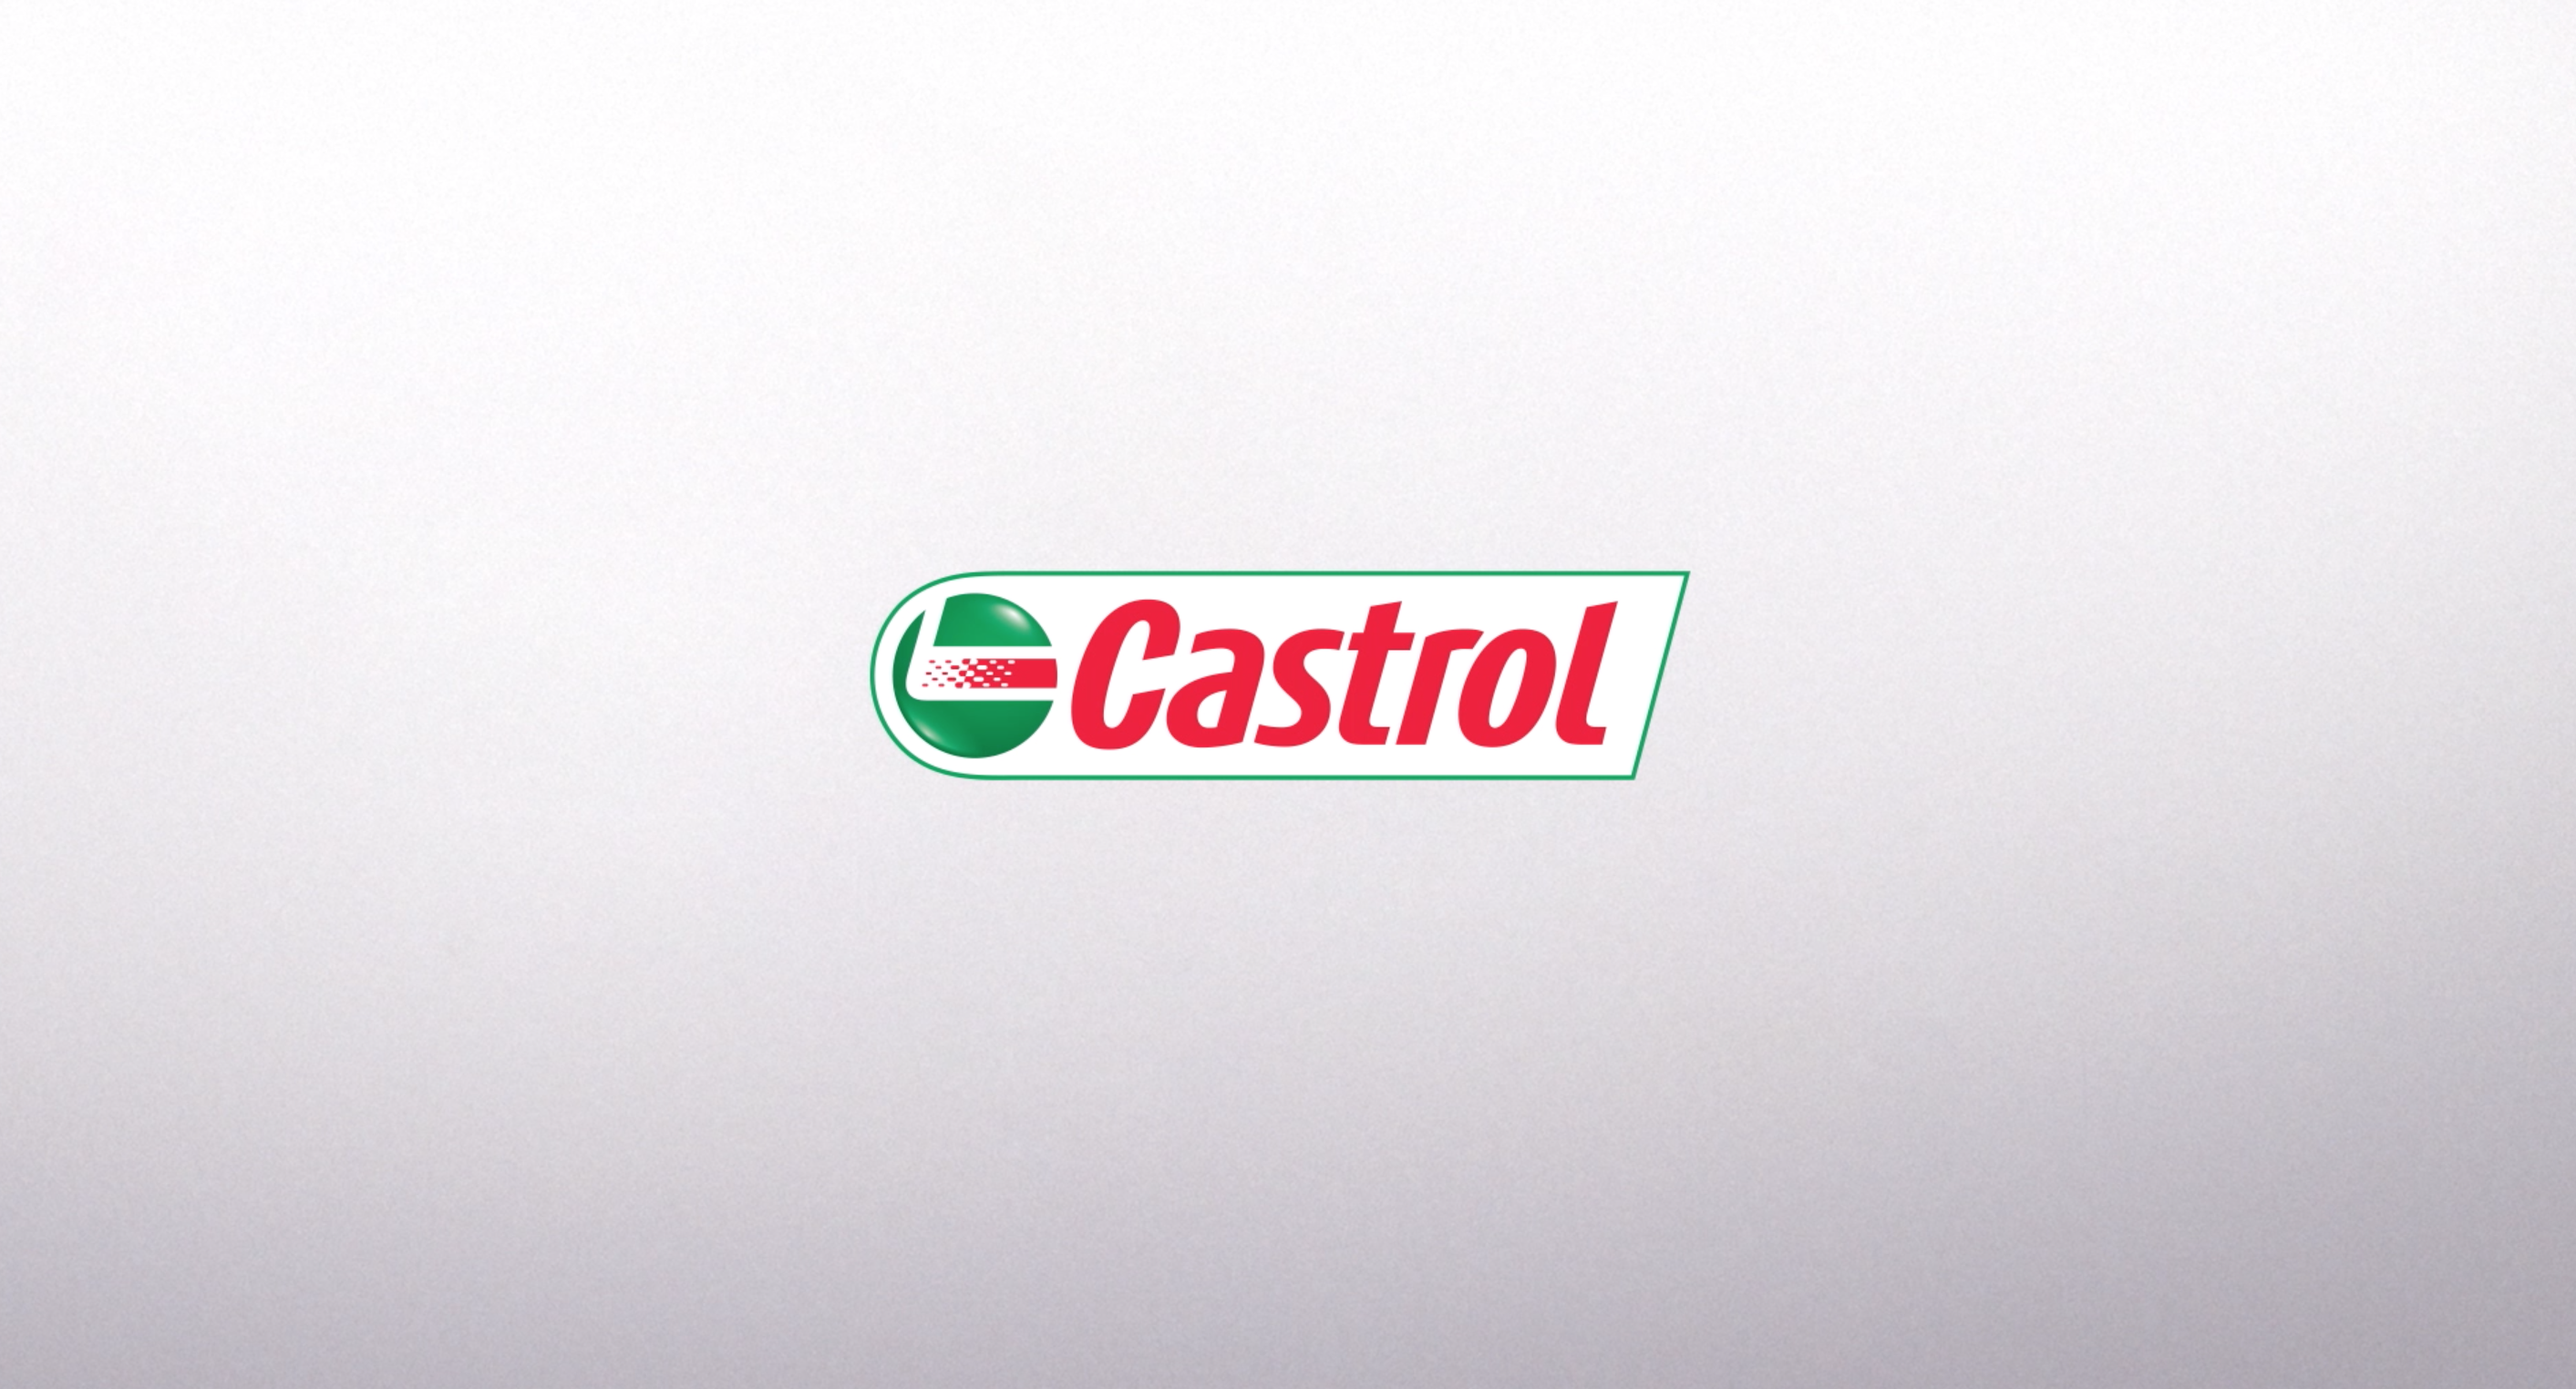 Castrol AUTO SERVICE - LKQ Corp